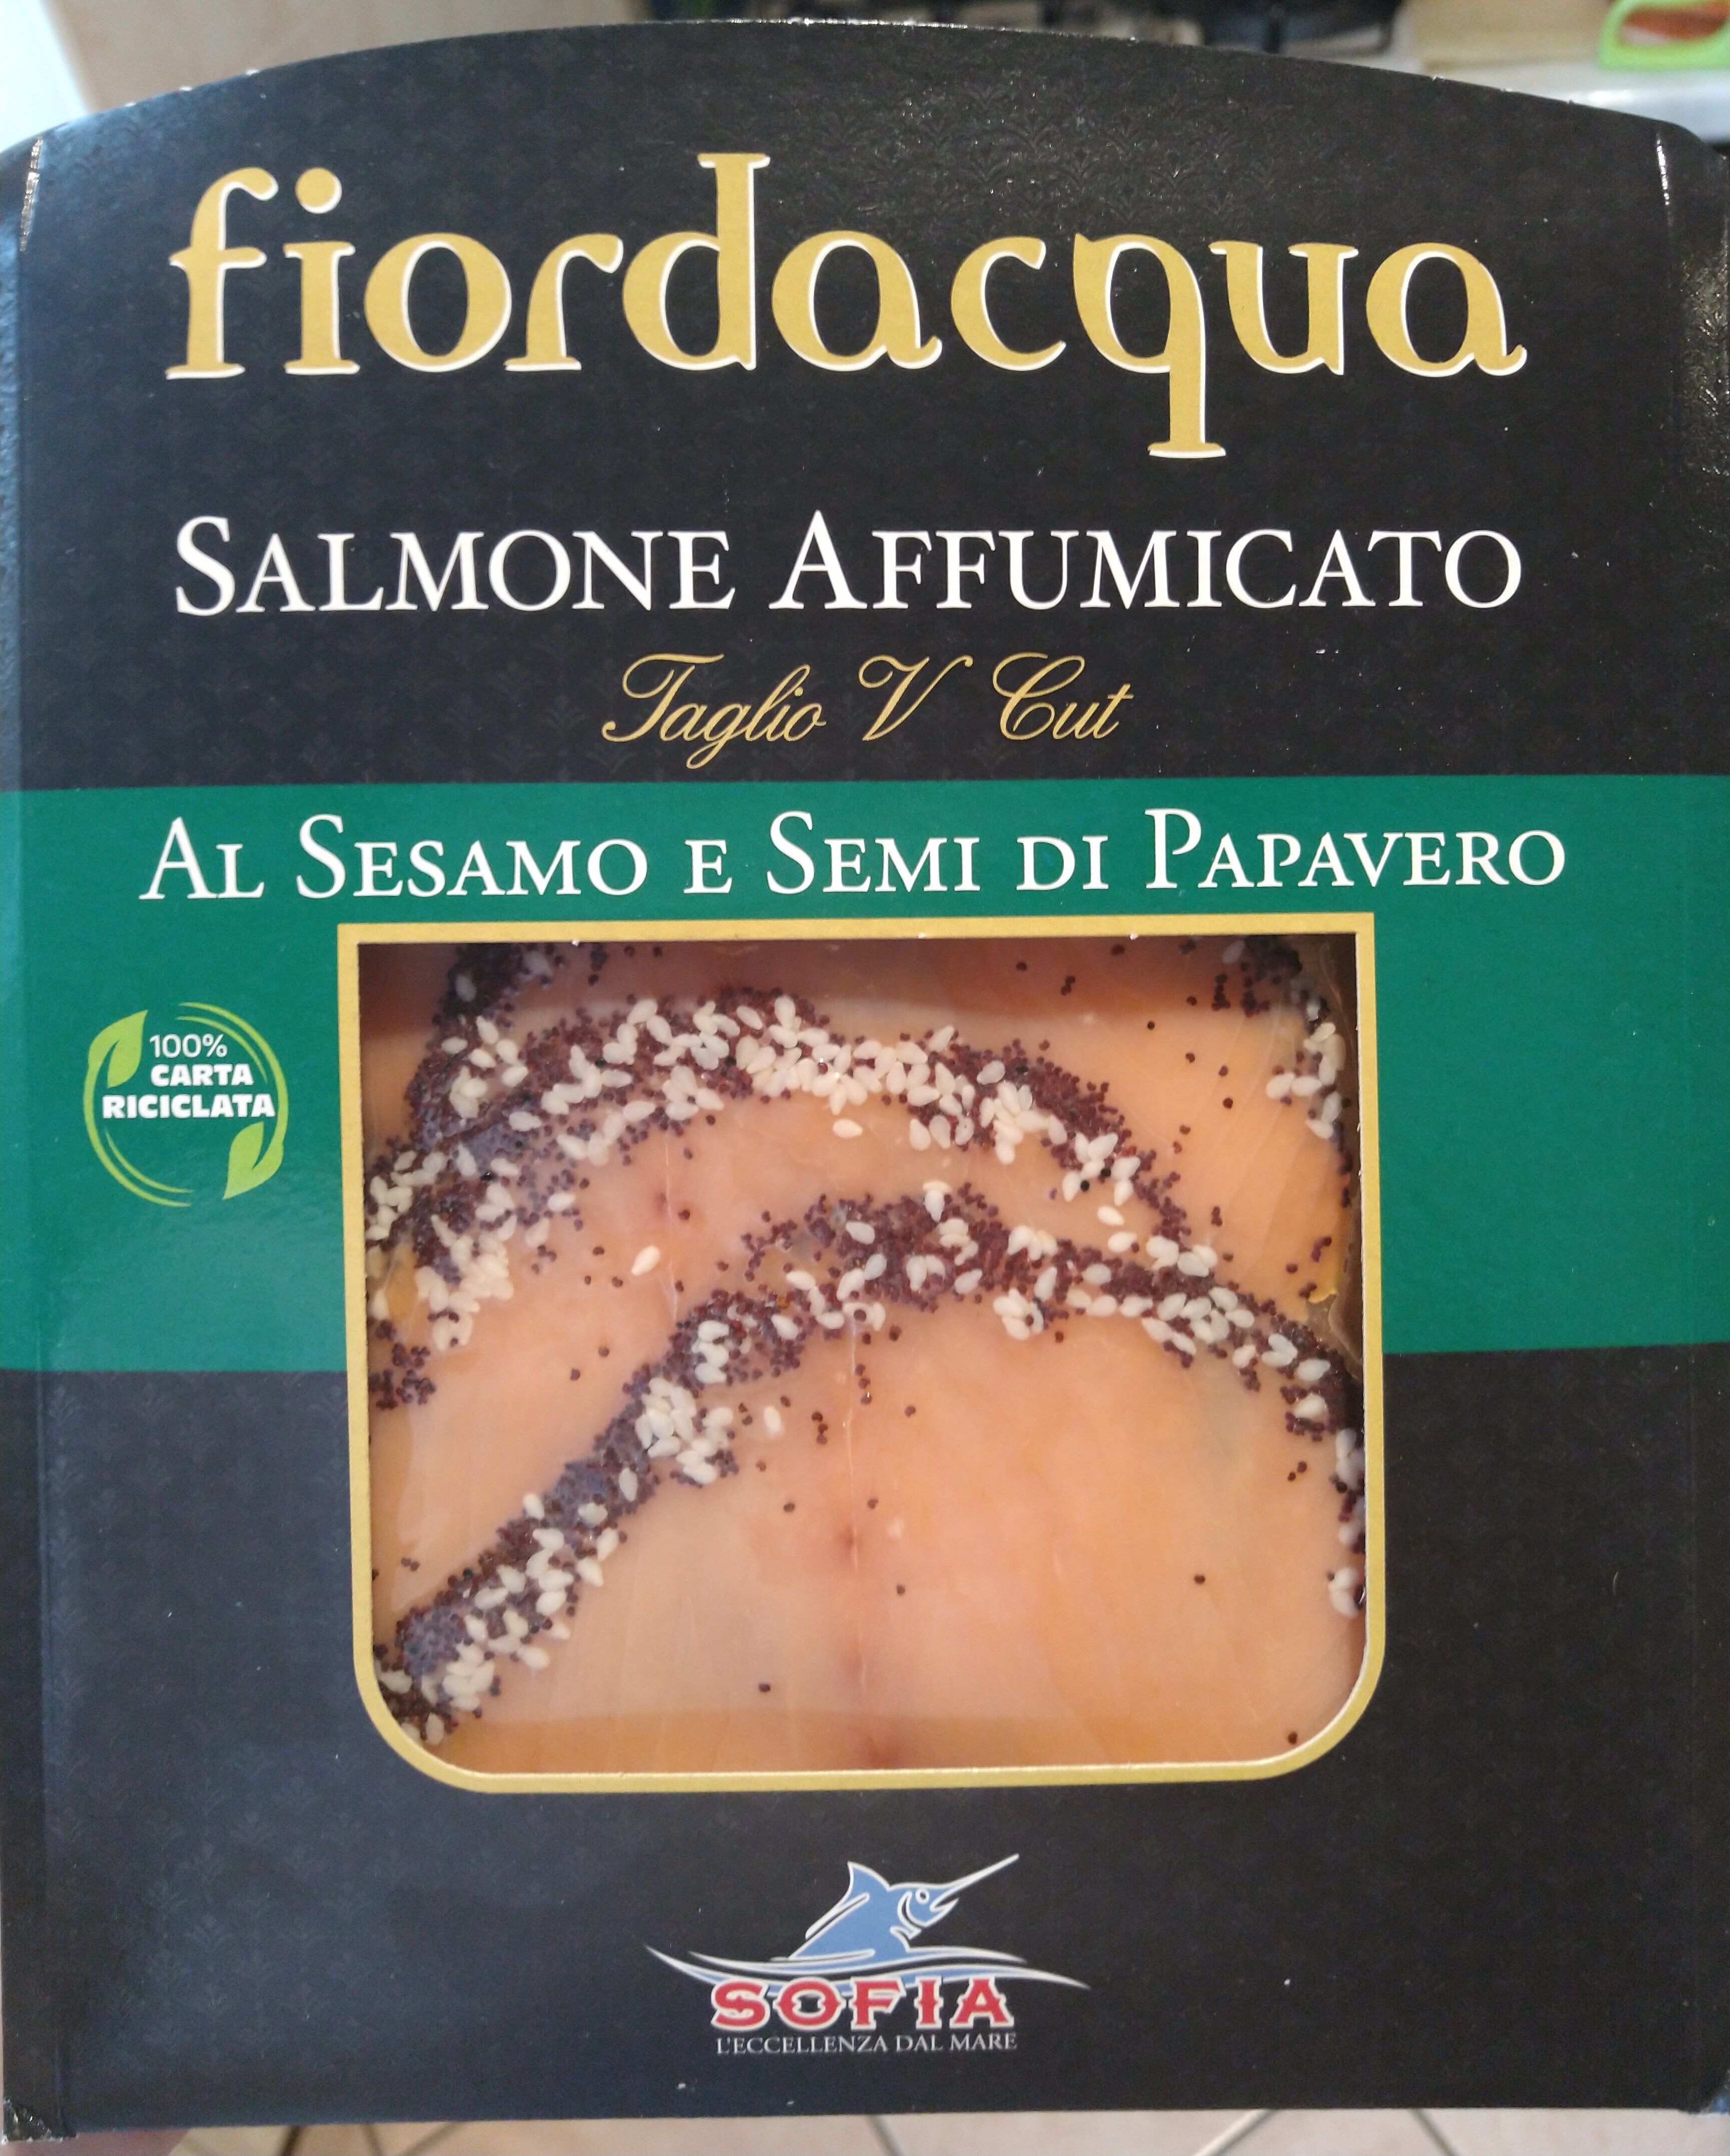 Fiordacqua - Salmone affumicato al sesamo e semi di papavero - Prodotto